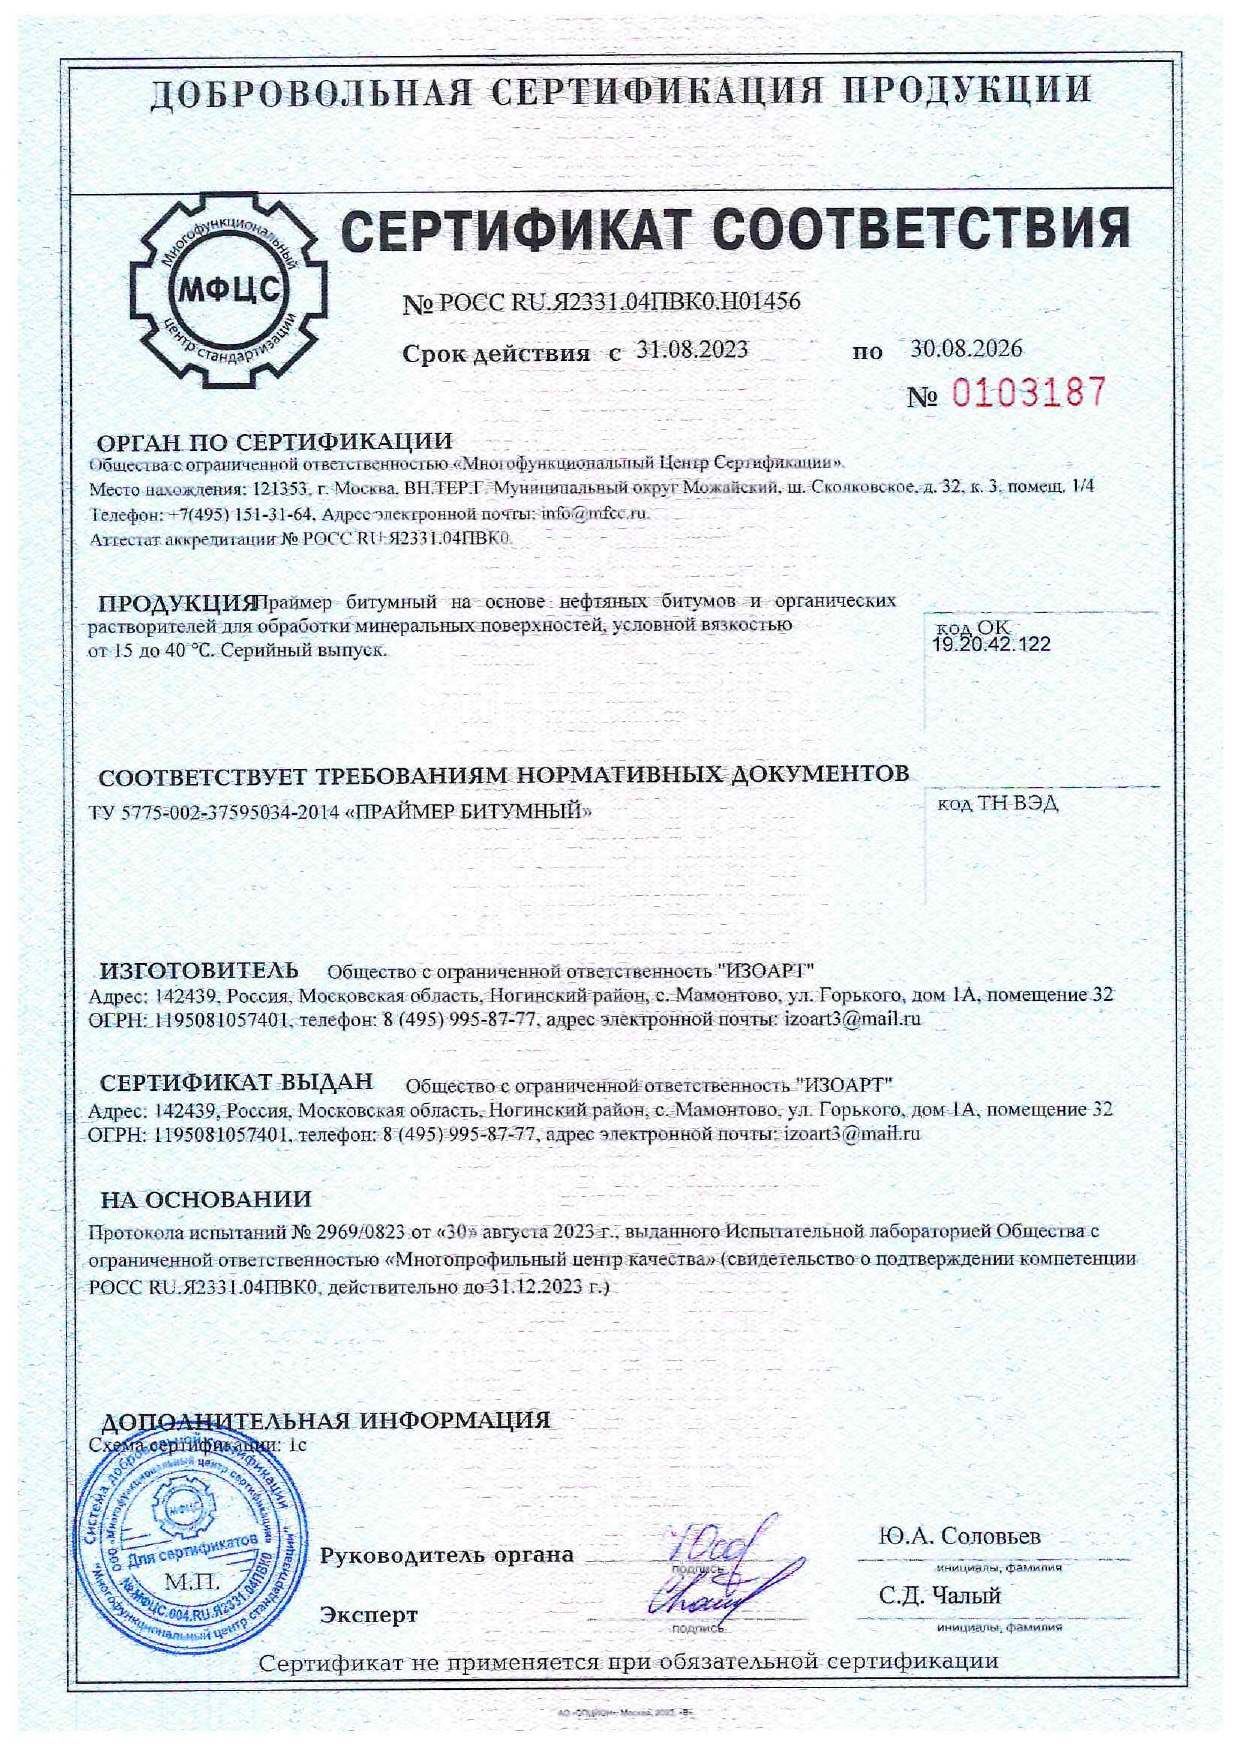 Сертификат праймер